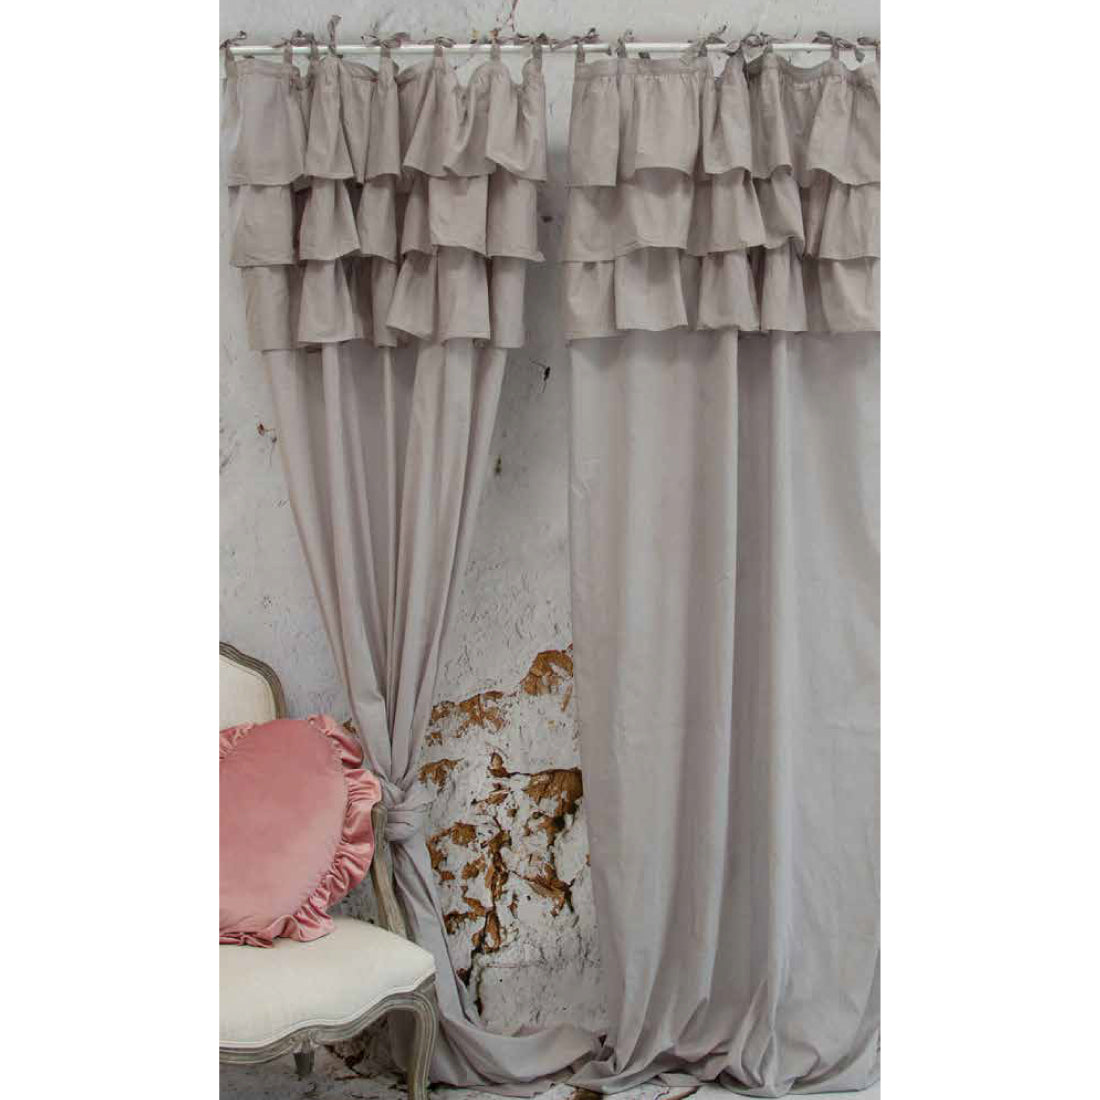 L'Atelier17 Etoile 3-Roche Border Curtain - Grey